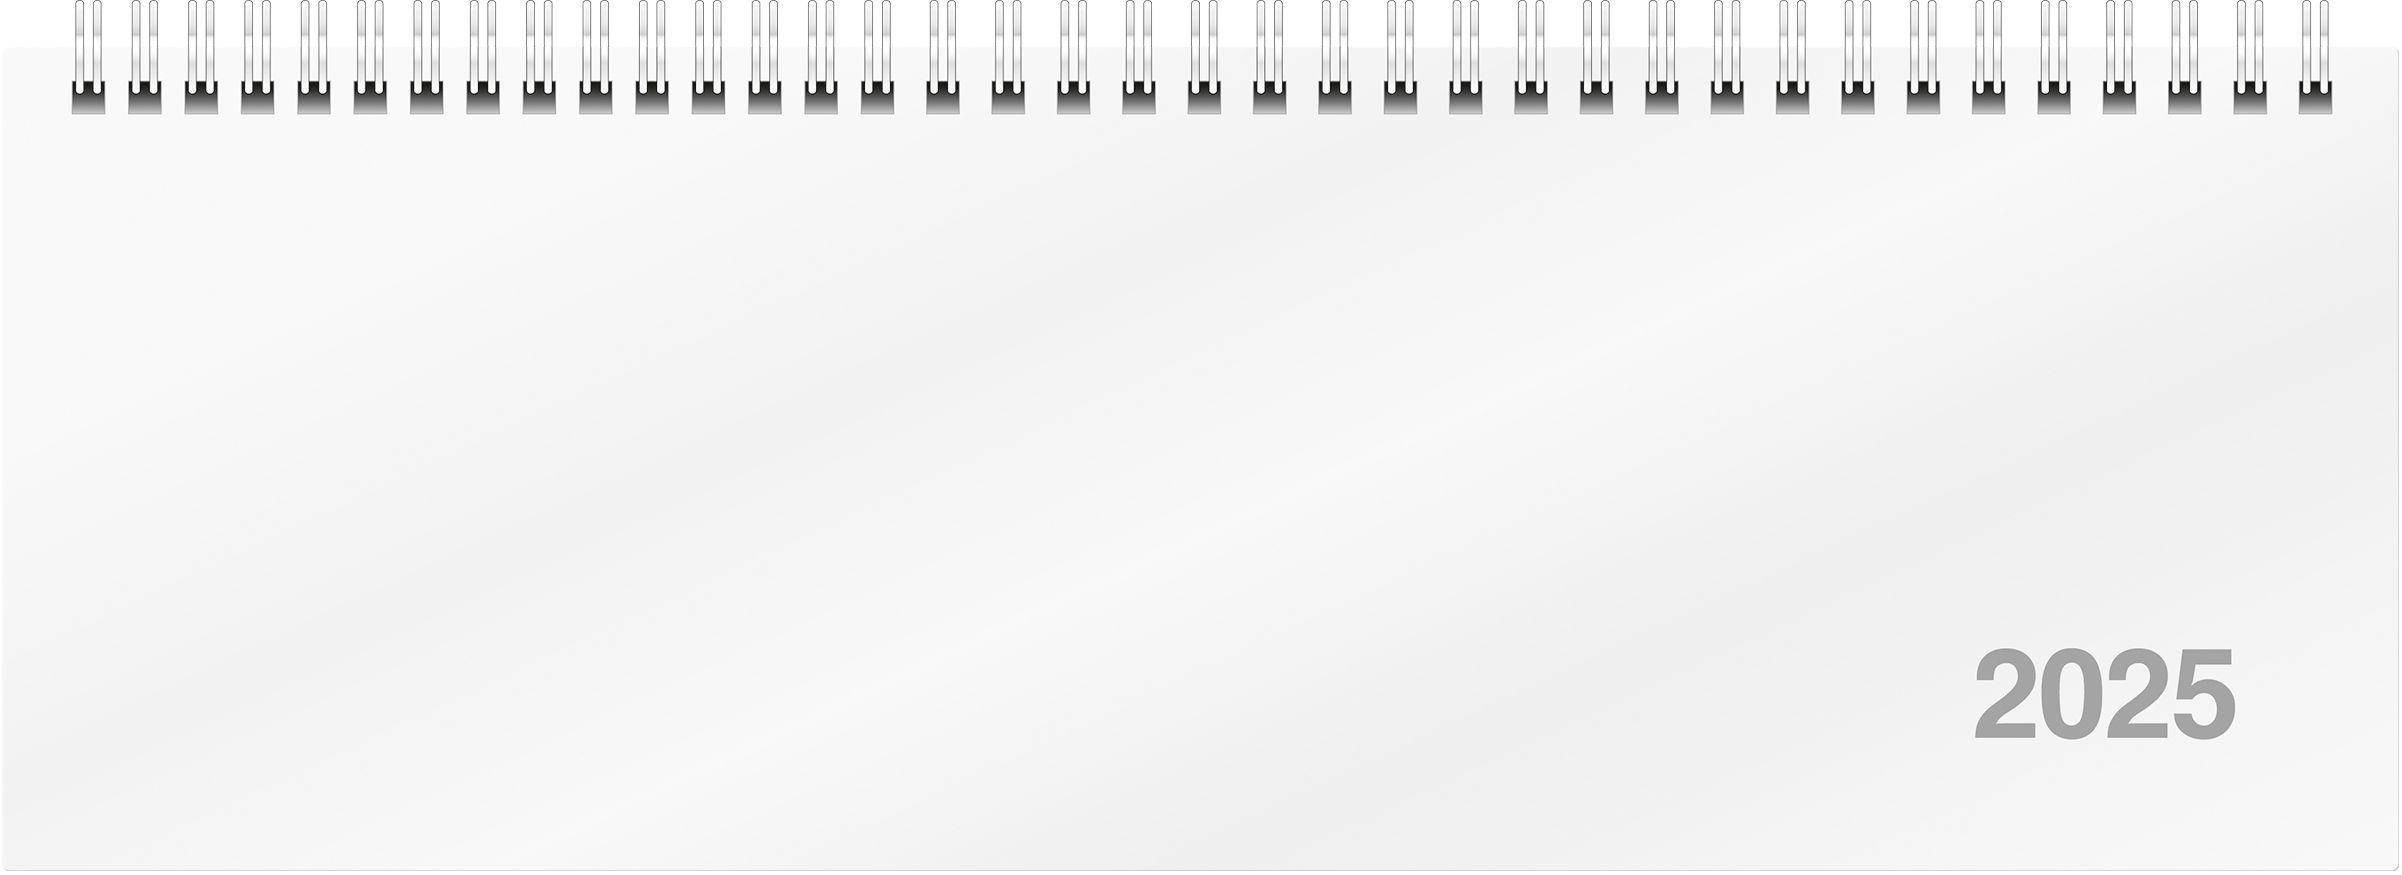 rido/idé 7031701005 Querterminbuch Modell ac-Wochenquerterminer (2025)| 2 Seiten = 1 Woche| 307 × 105 mm| 112 Seiten| Karton-Einband Trucard| weiß